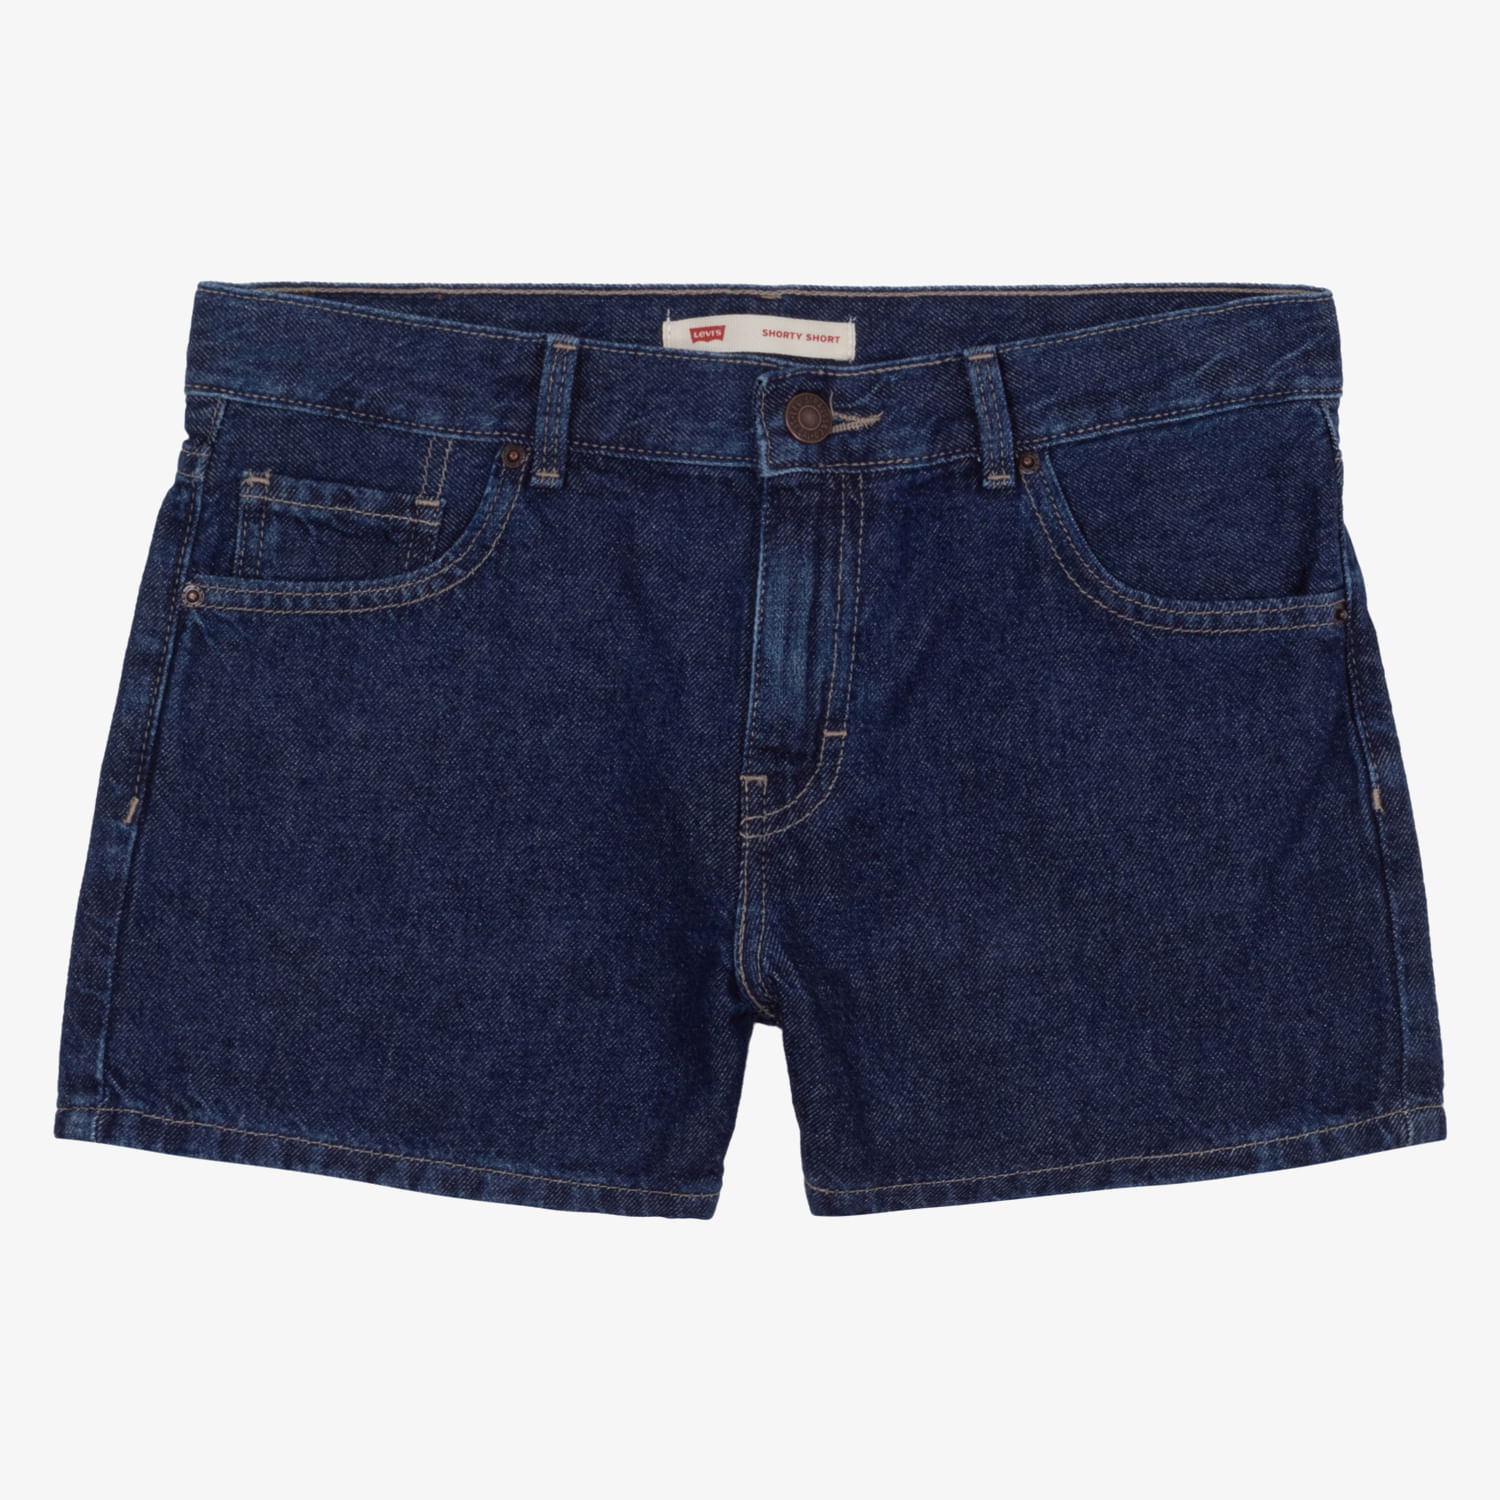 Shorts Jeans Levi's Infantil - Feminino